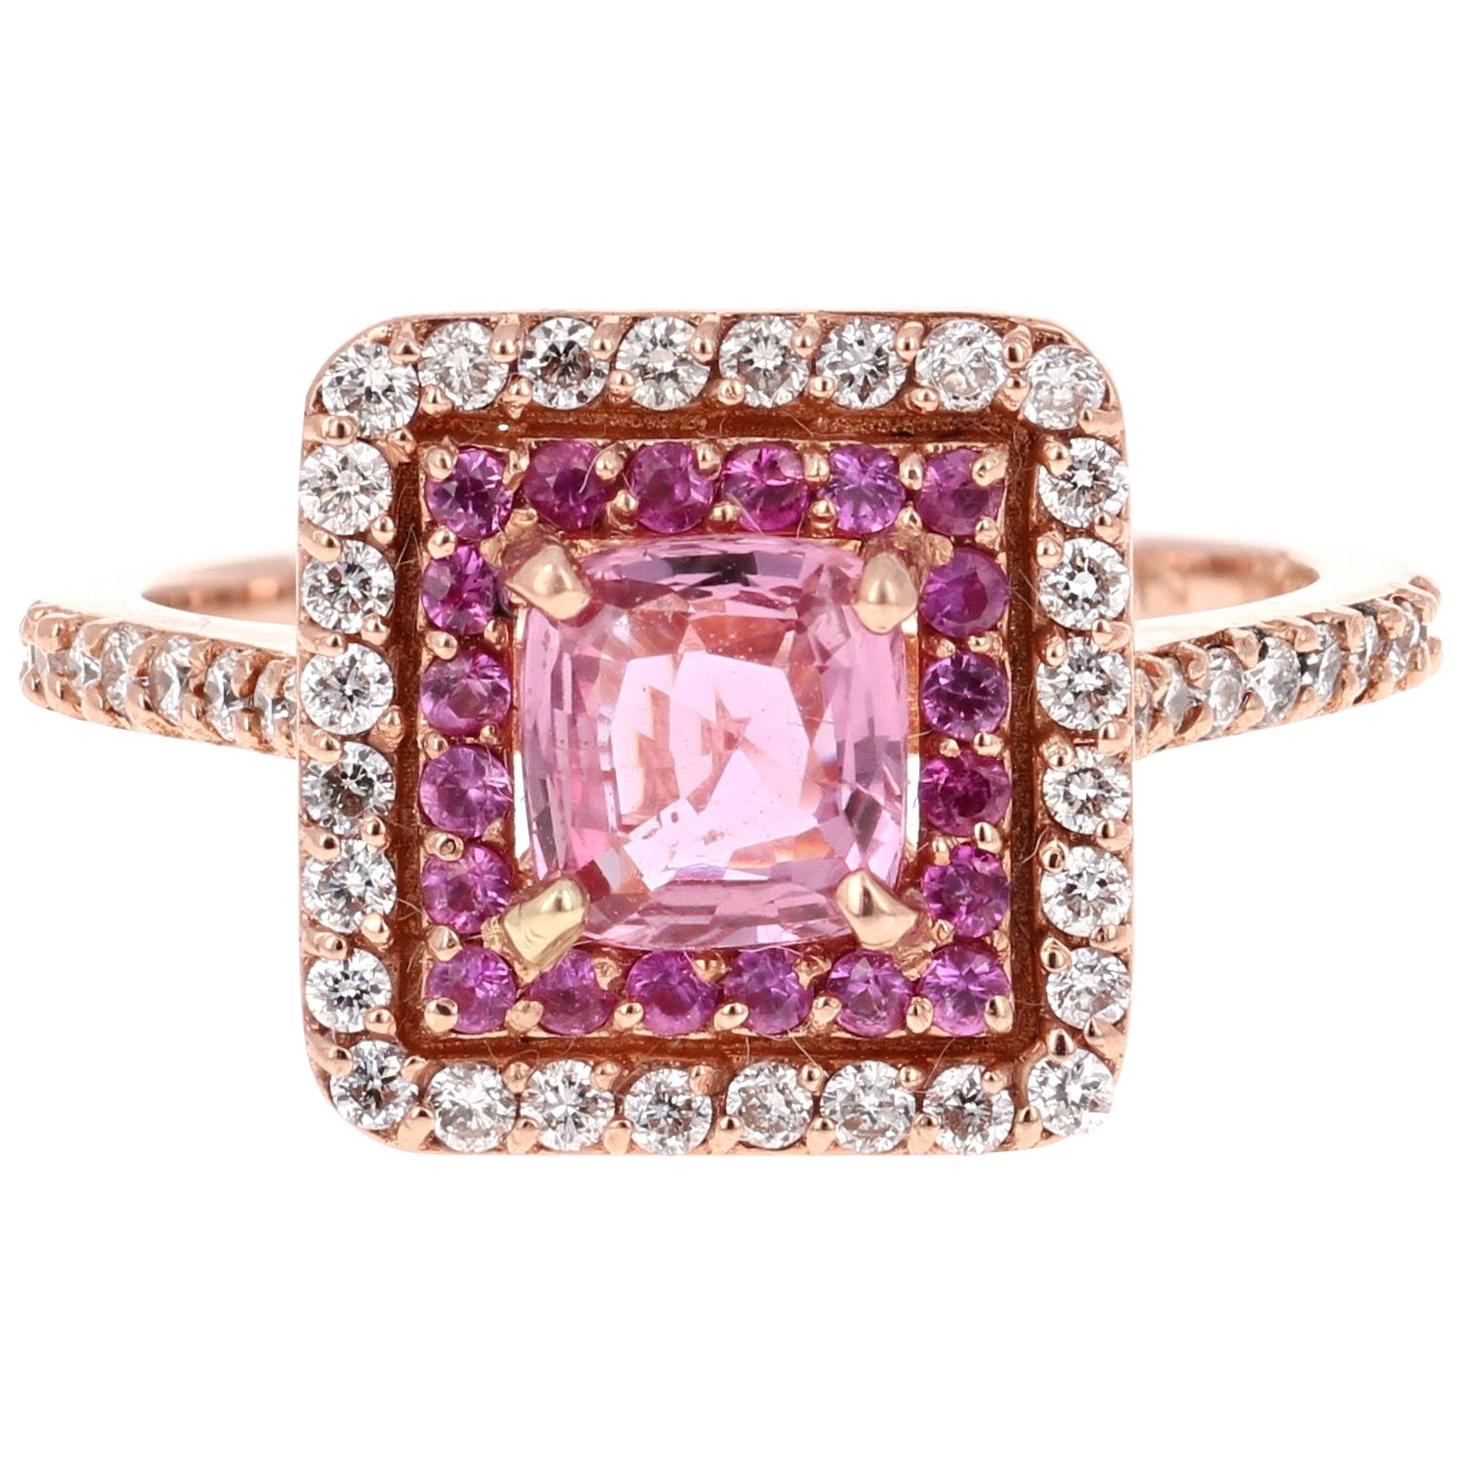 1.68 Carat Cushion Cut Pink Sapphire Diamond 14 Karat Rose Gold Bridal Ring